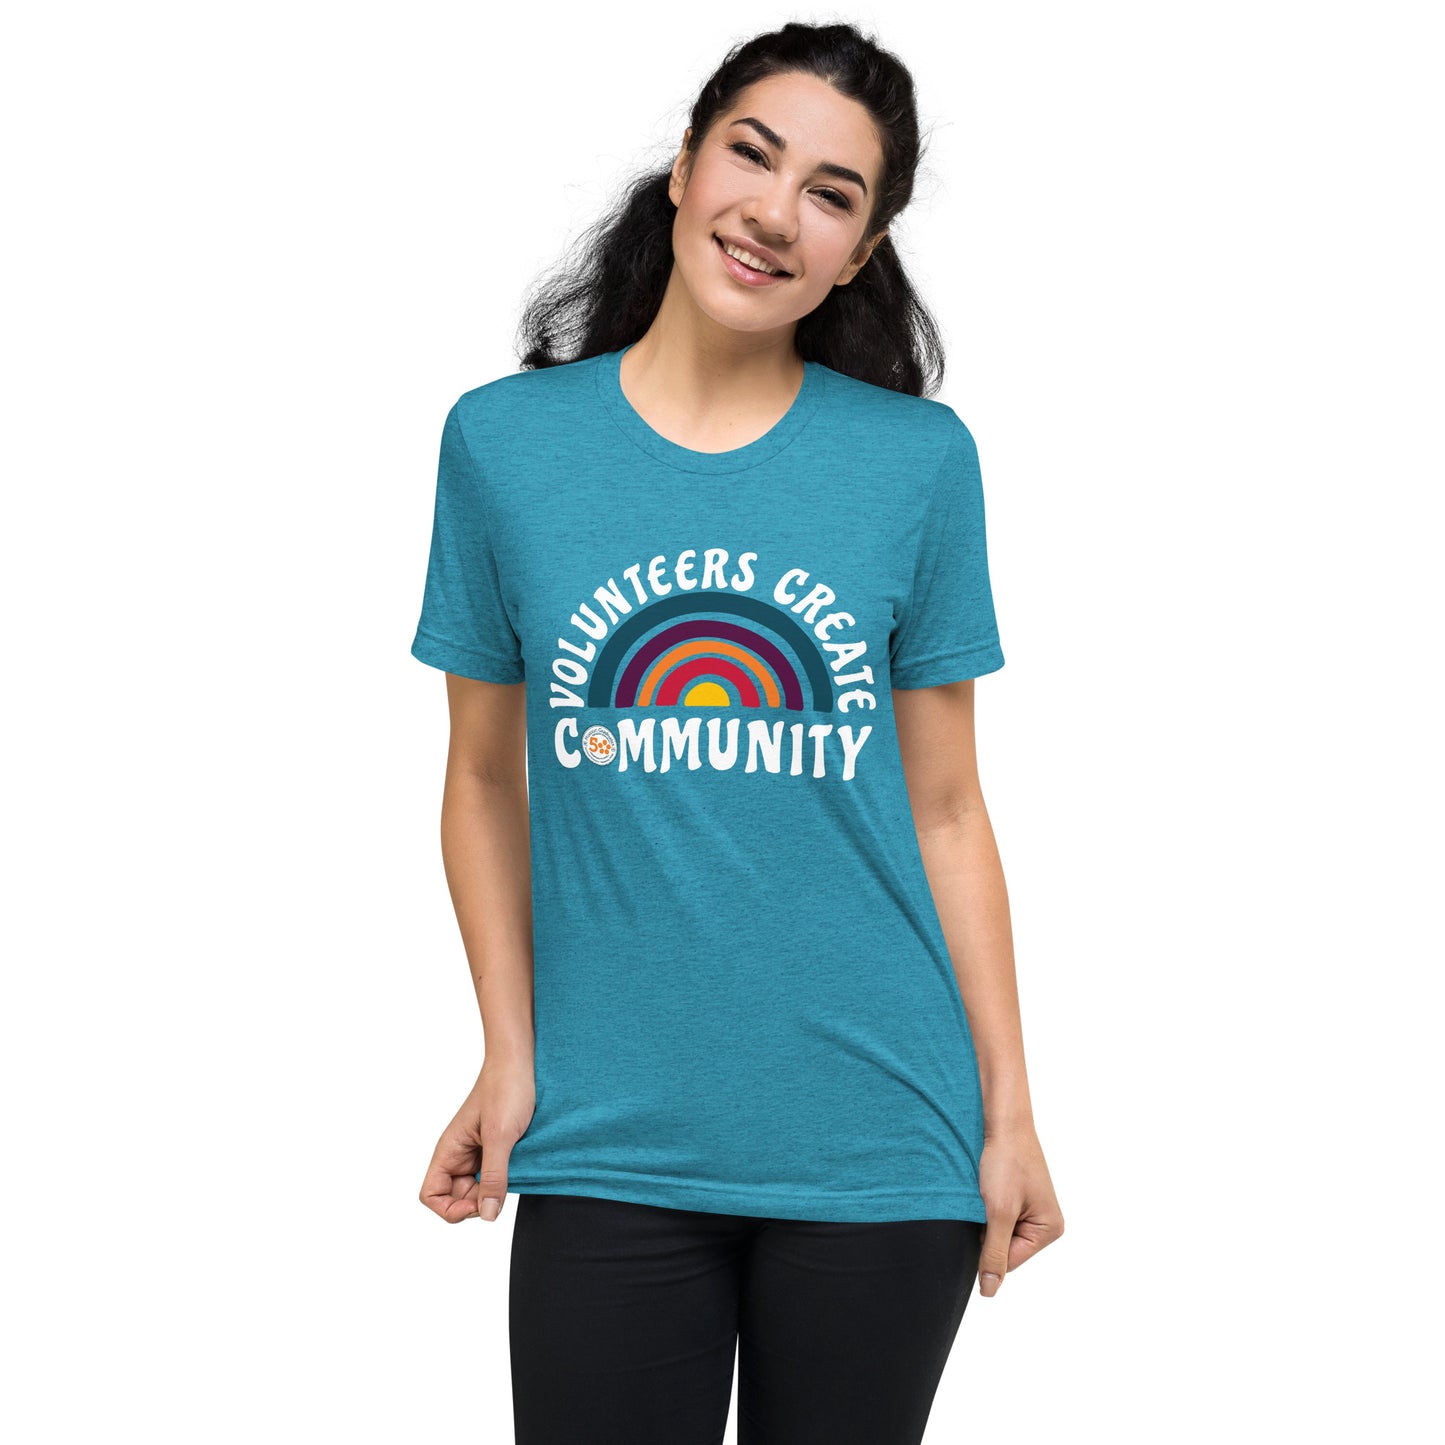 MG Volunteer Appreciation Tee, "Volunteers Create Community" Short Adult Sleeve T-shirt